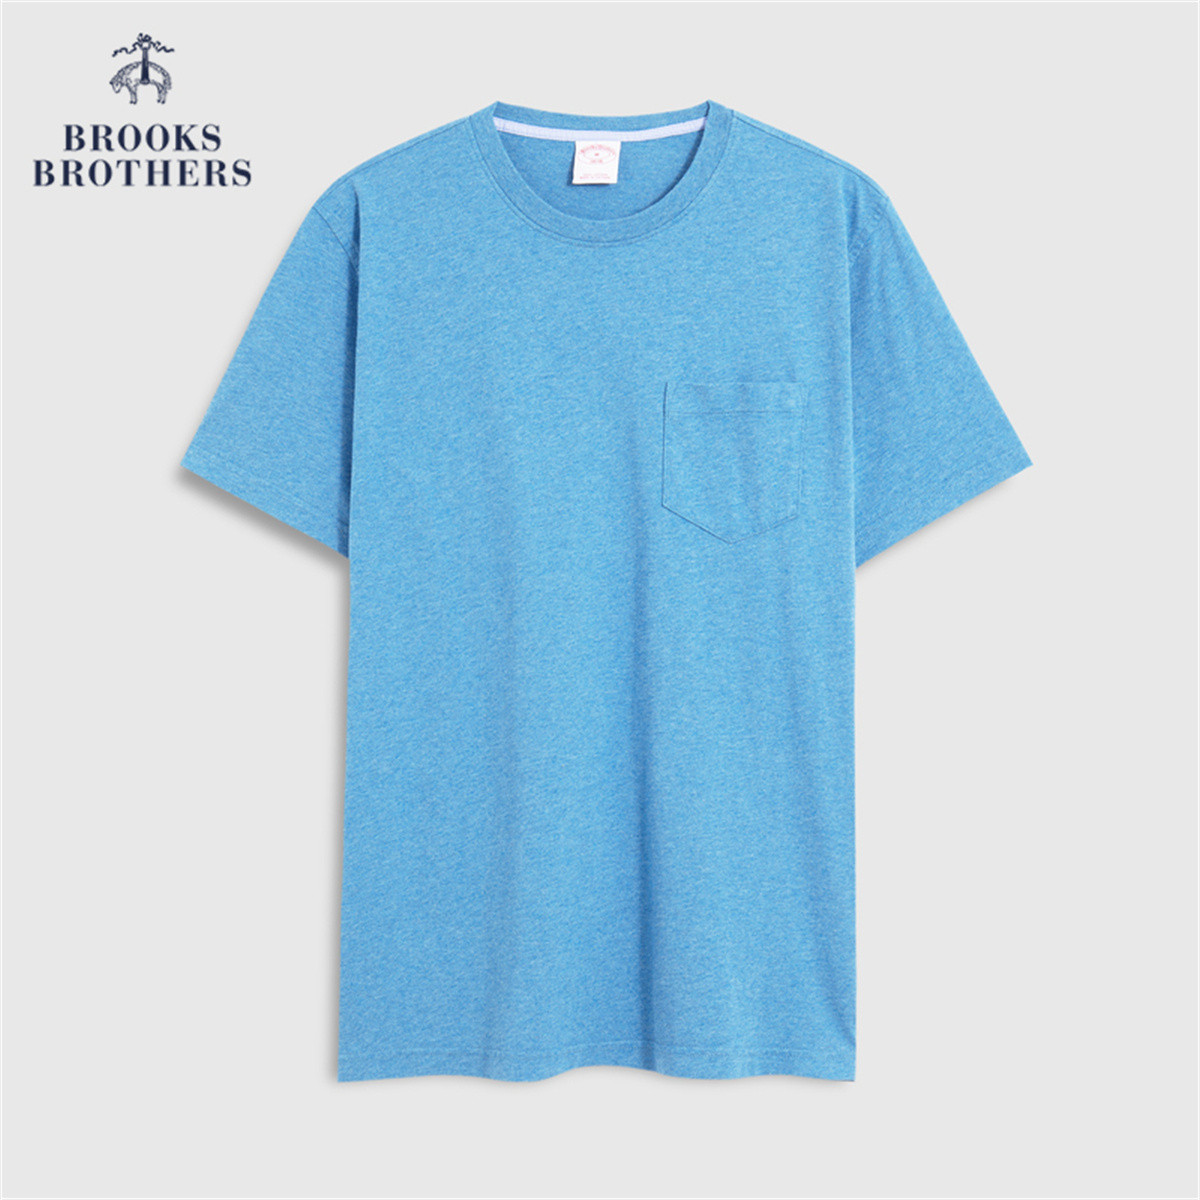 Brooks Brothers 男士纯棉圆领短袖T恤 1000090898